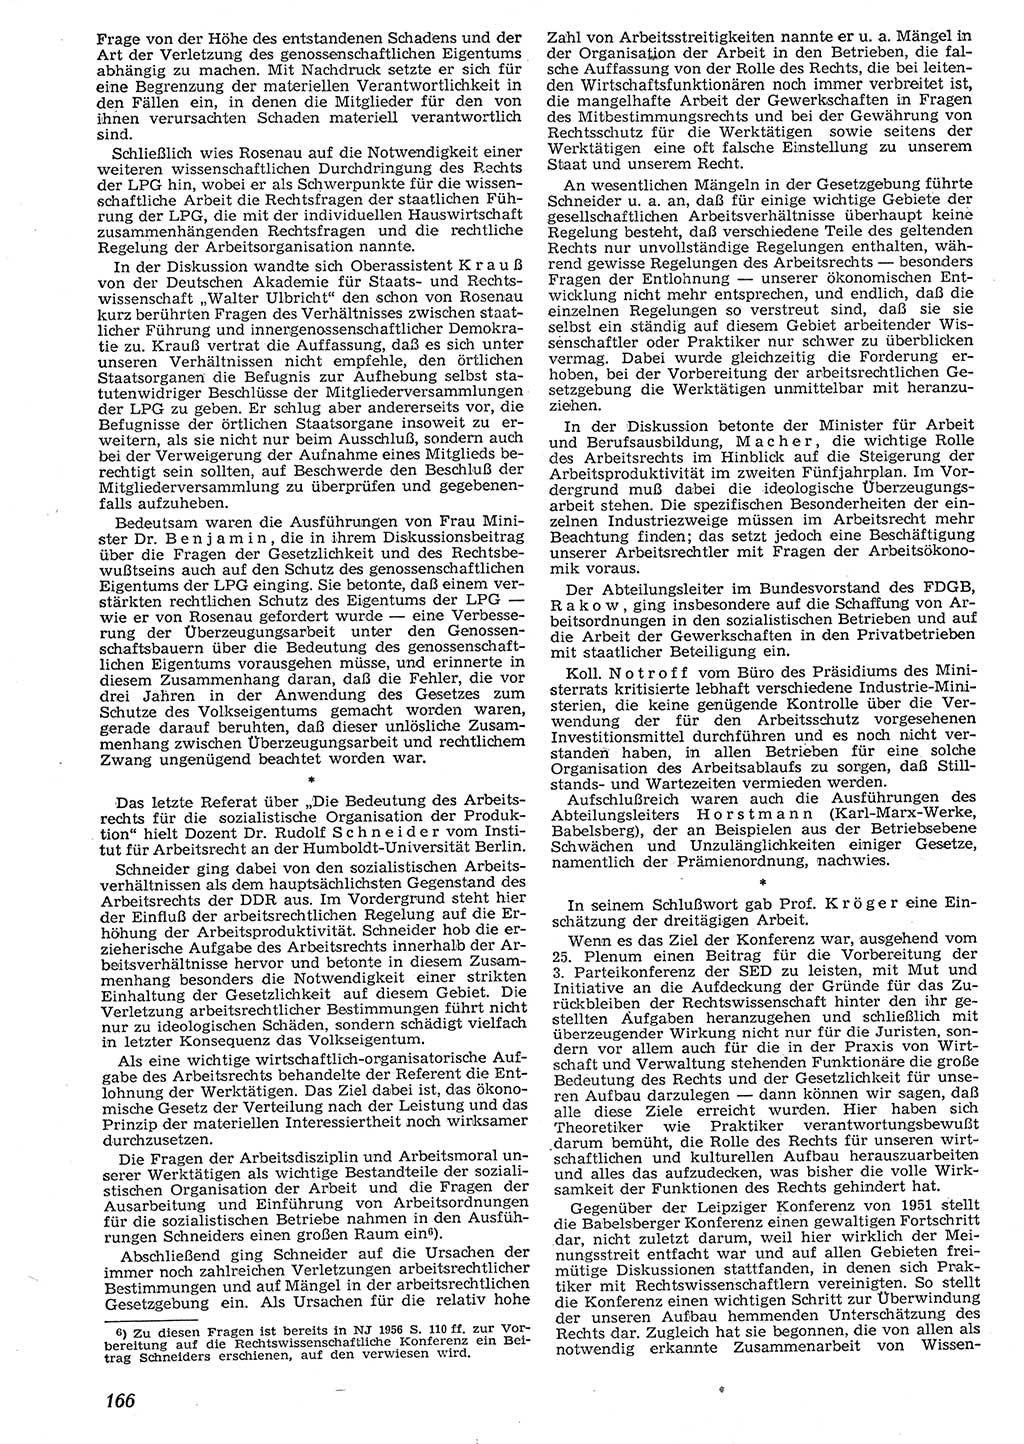 Neue Justiz (NJ), Zeitschrift für Recht und Rechtswissenschaft [Deutsche Demokratische Republik (DDR)], 10. Jahrgang 1956, Seite 166 (NJ DDR 1956, S. 166)